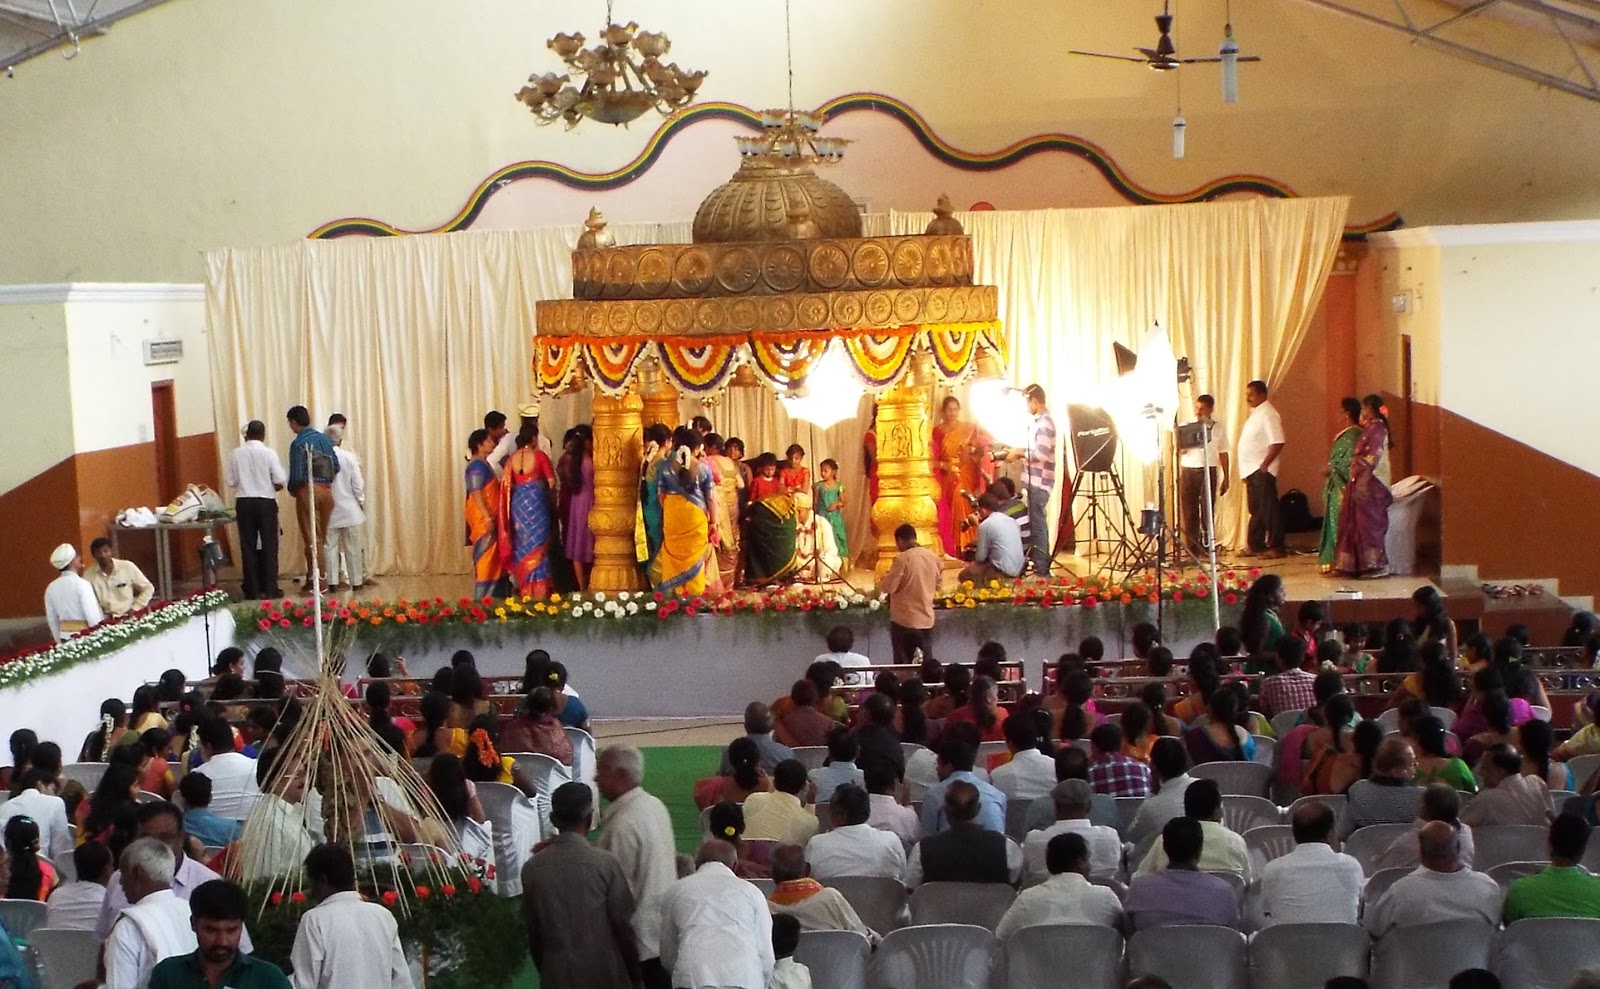 インドのイメージup ブログ インドの結婚式はド派手で豪華で参列者多すぎ 日本とは違う 海外の挙式 インドの挙式事情をレポート